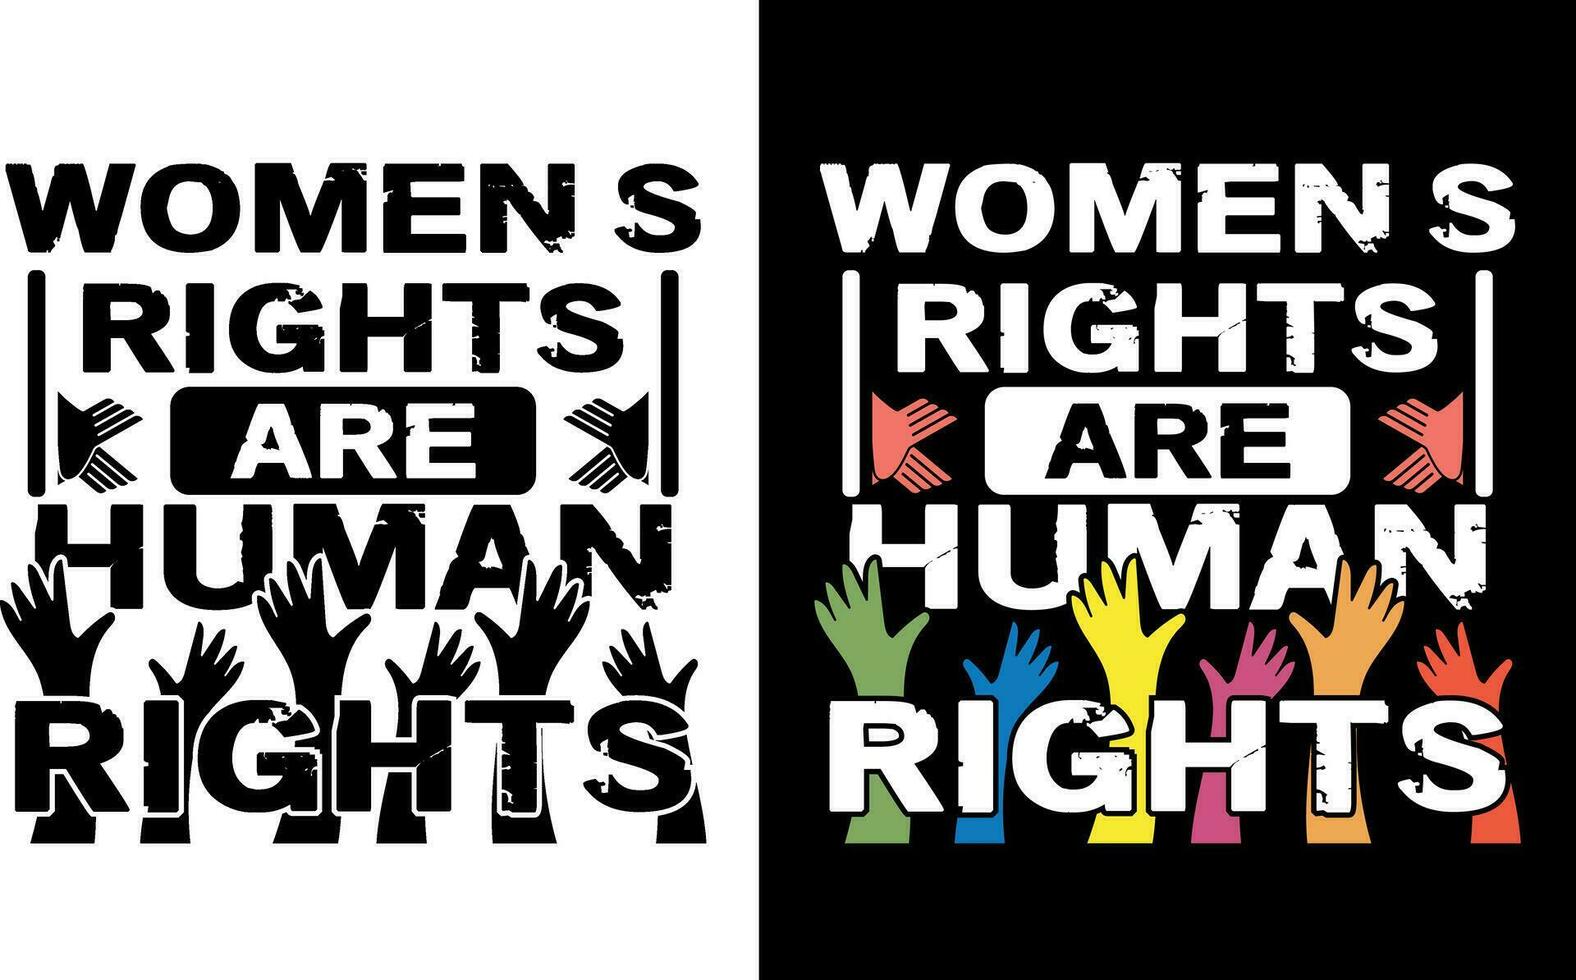 conception de t-shirt bonne journée des droits de l'homme vecteur